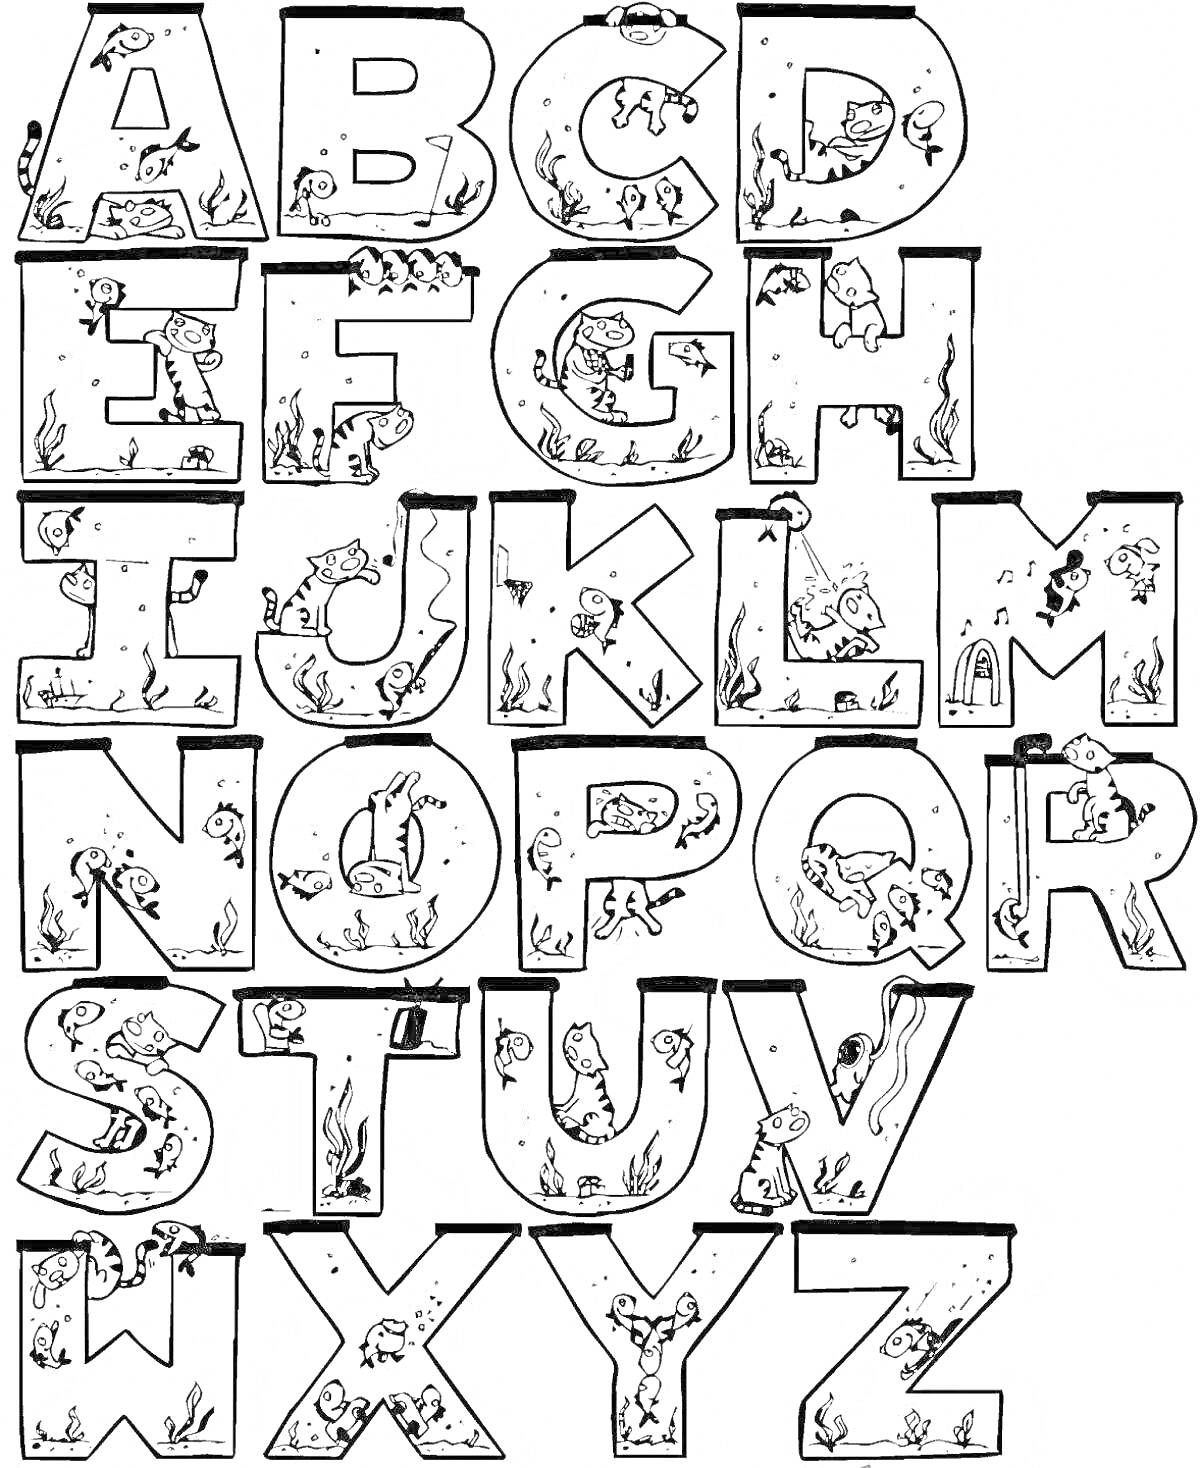 Раскраска Алфавит с элементами ужастиков: буквы с призраками, зомби, летучими мышами, пауками и могилами